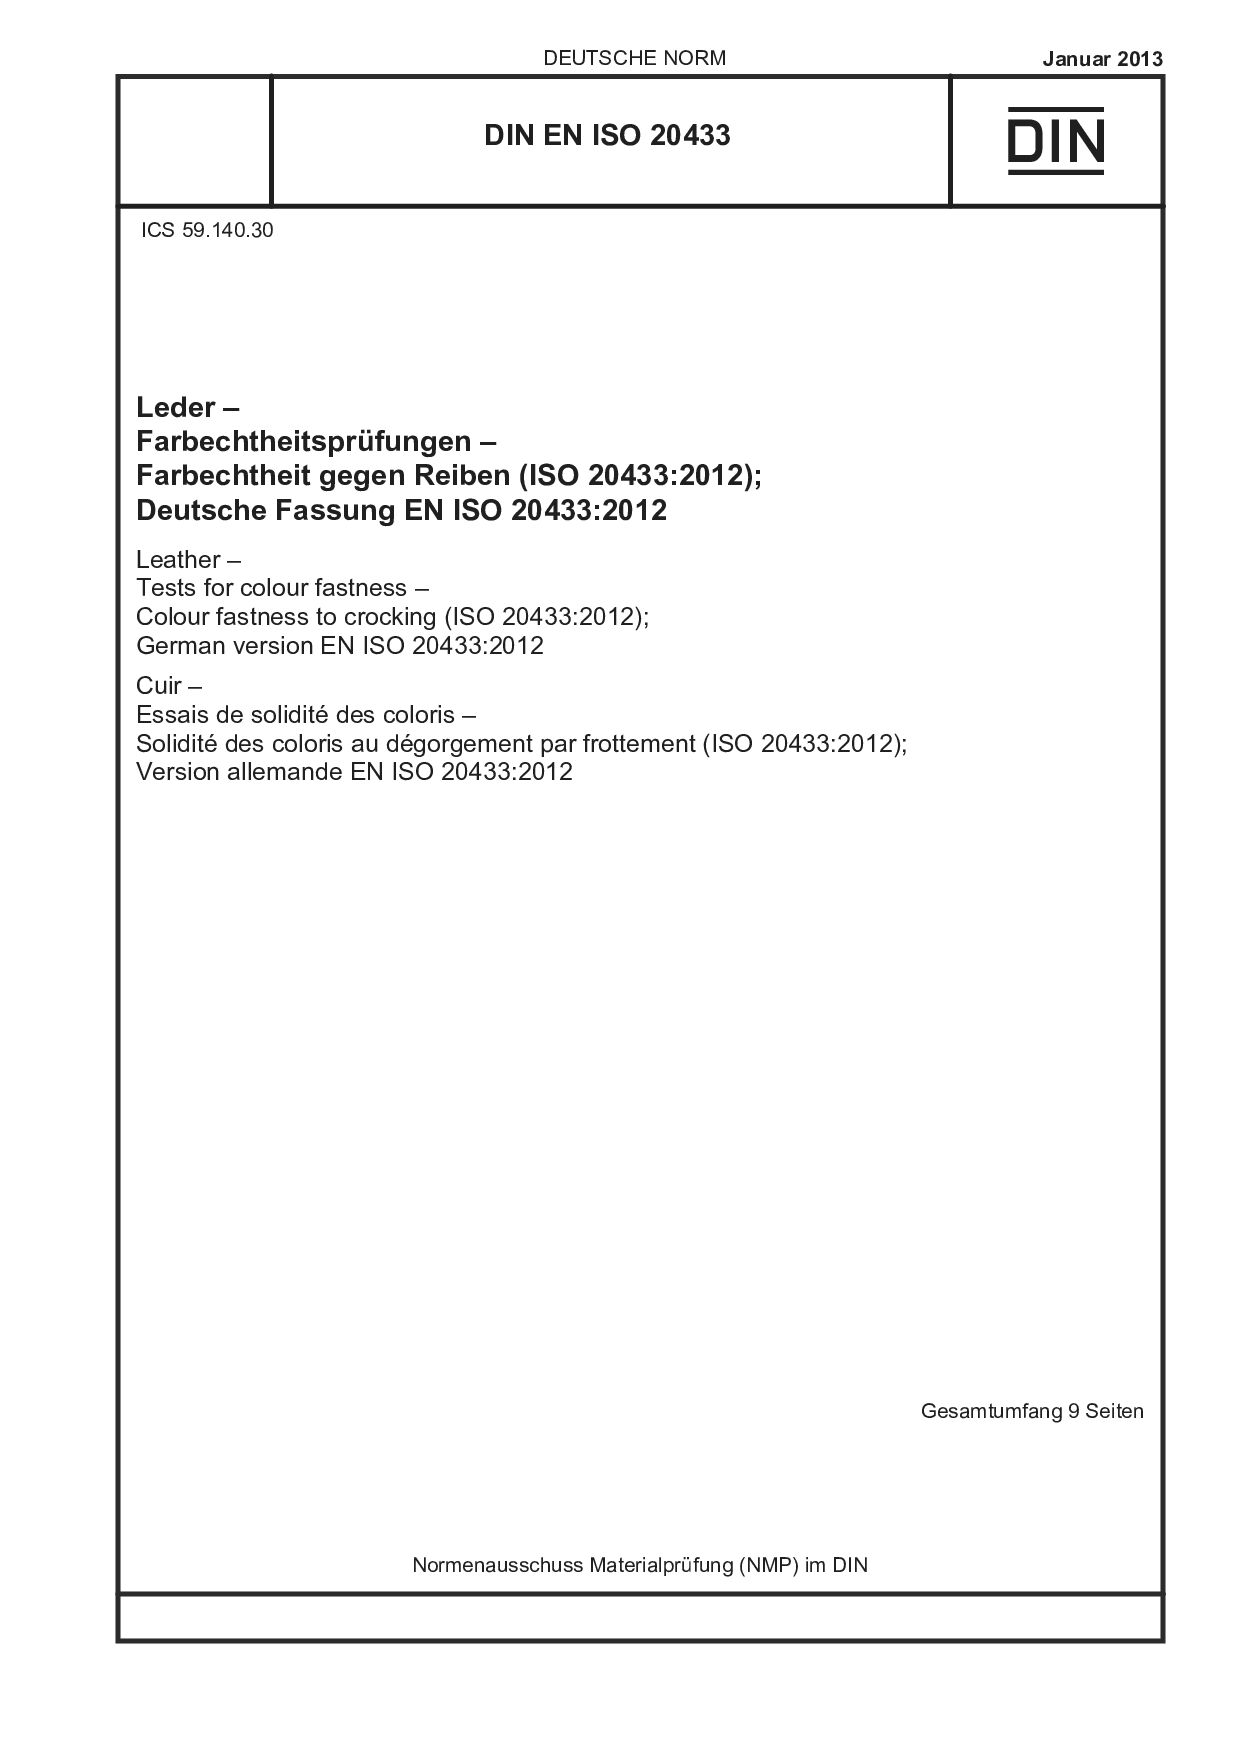 DIN EN ISO 20433:2013-01